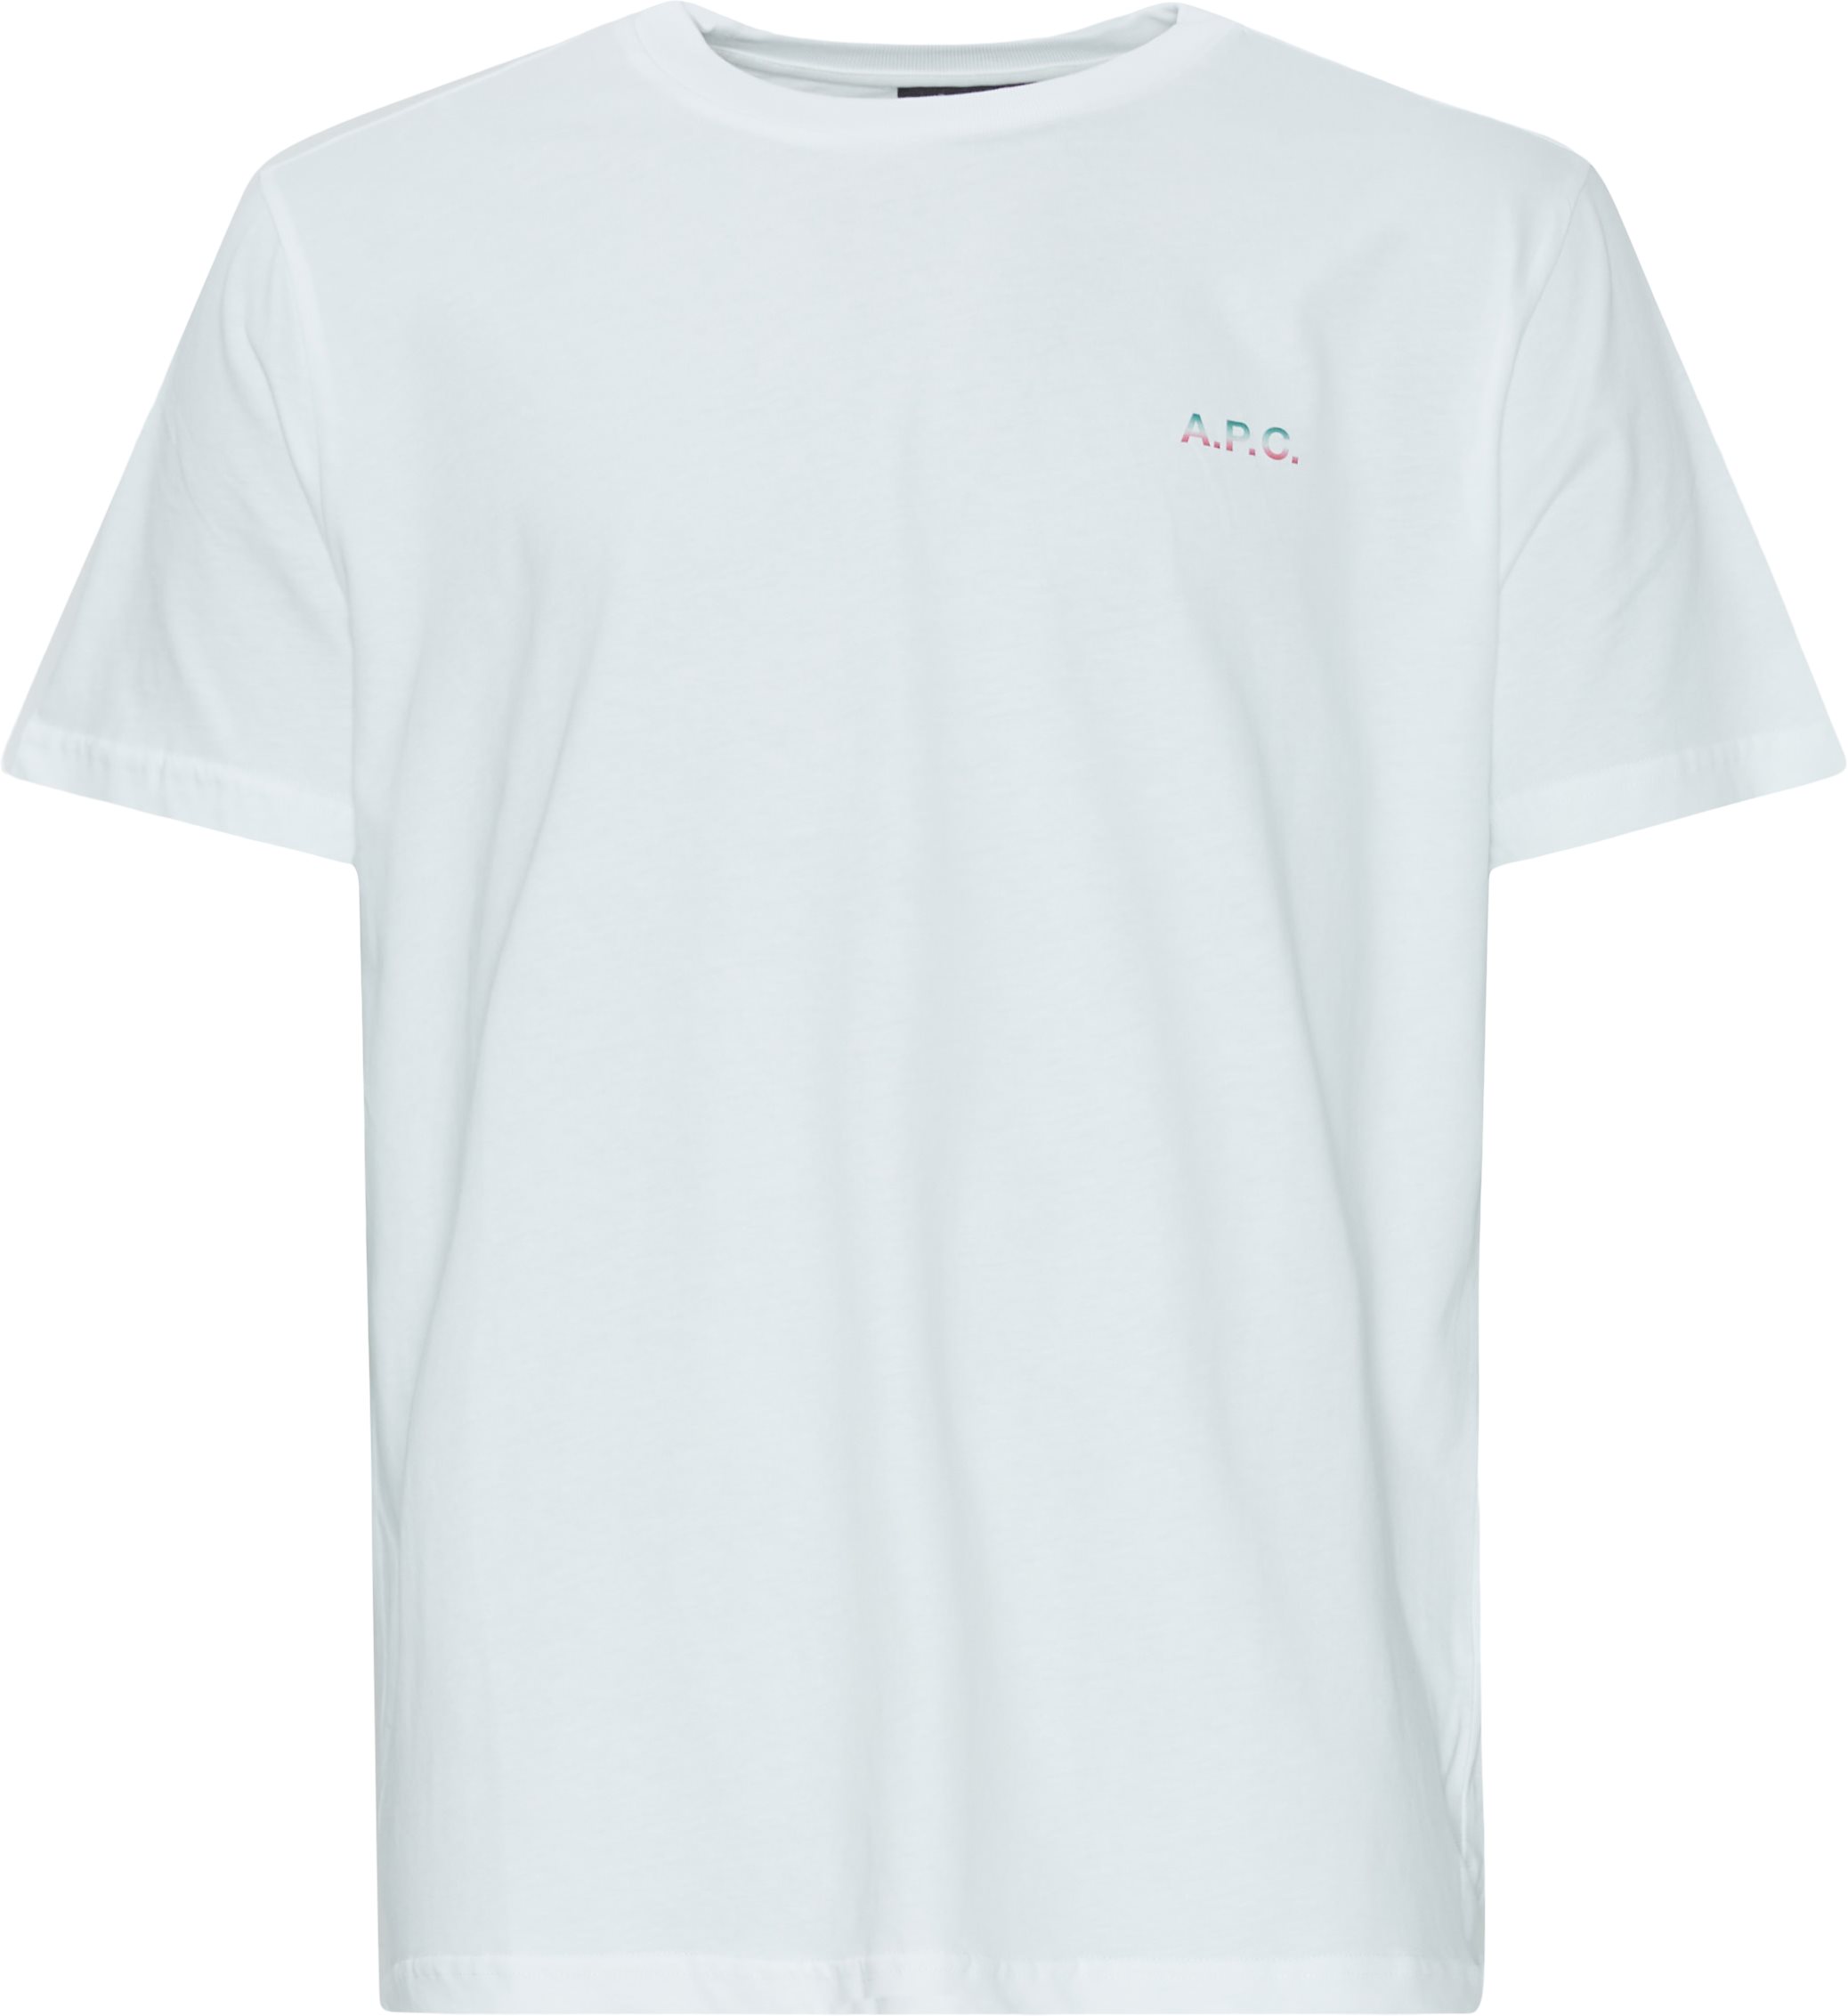 A.P.C. T-shirts COEIO H26360 White